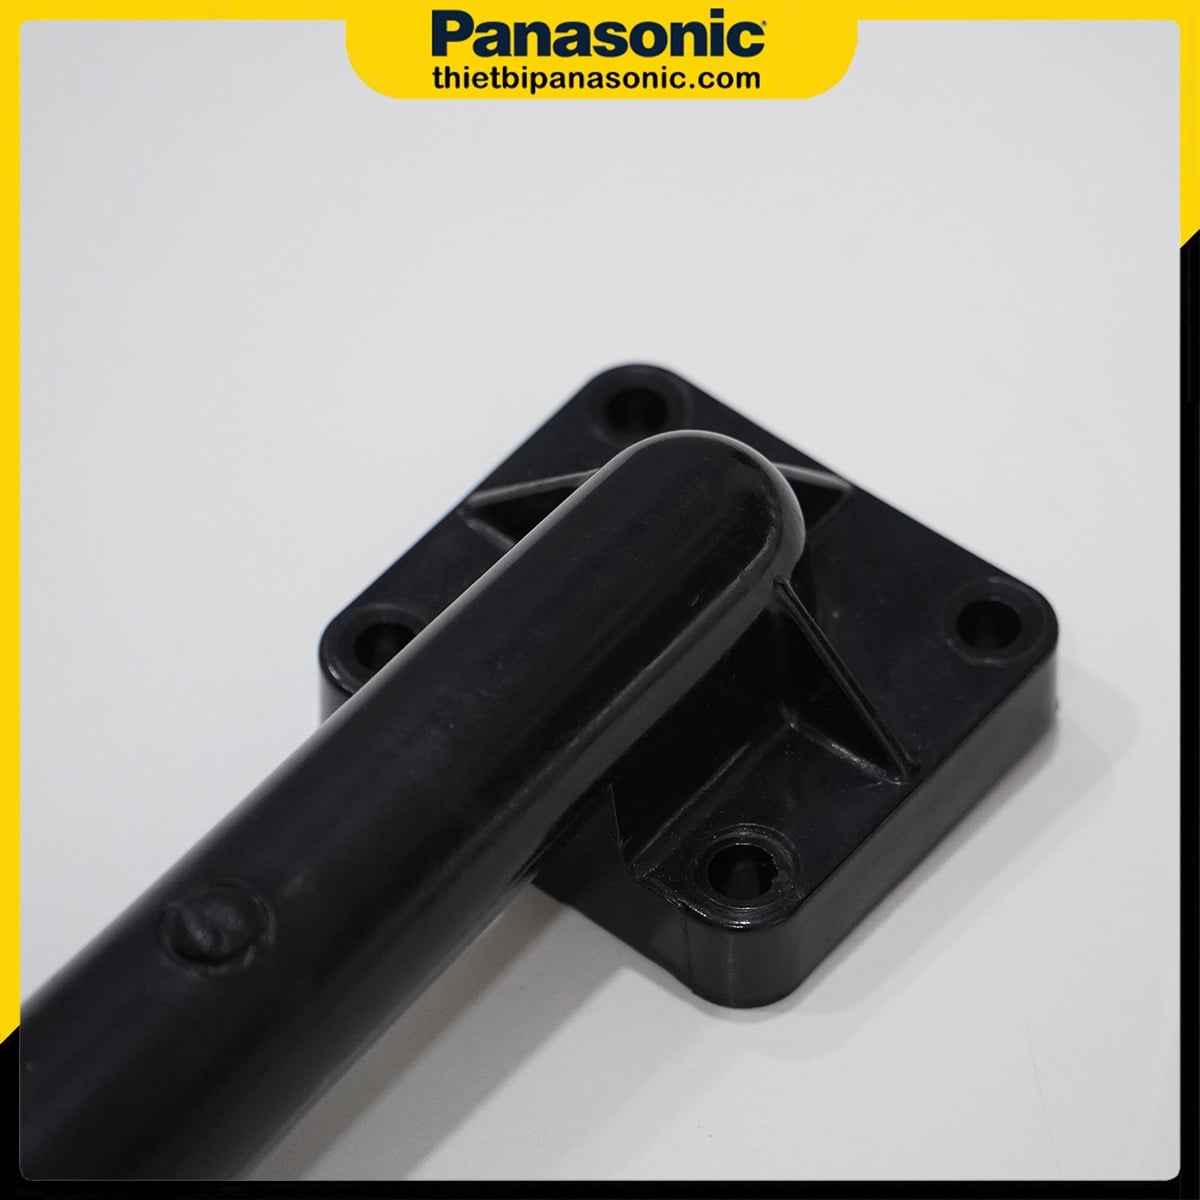 Co đứng bơm vuông Panasonic được làm từ nhựa PVC cứng cáp